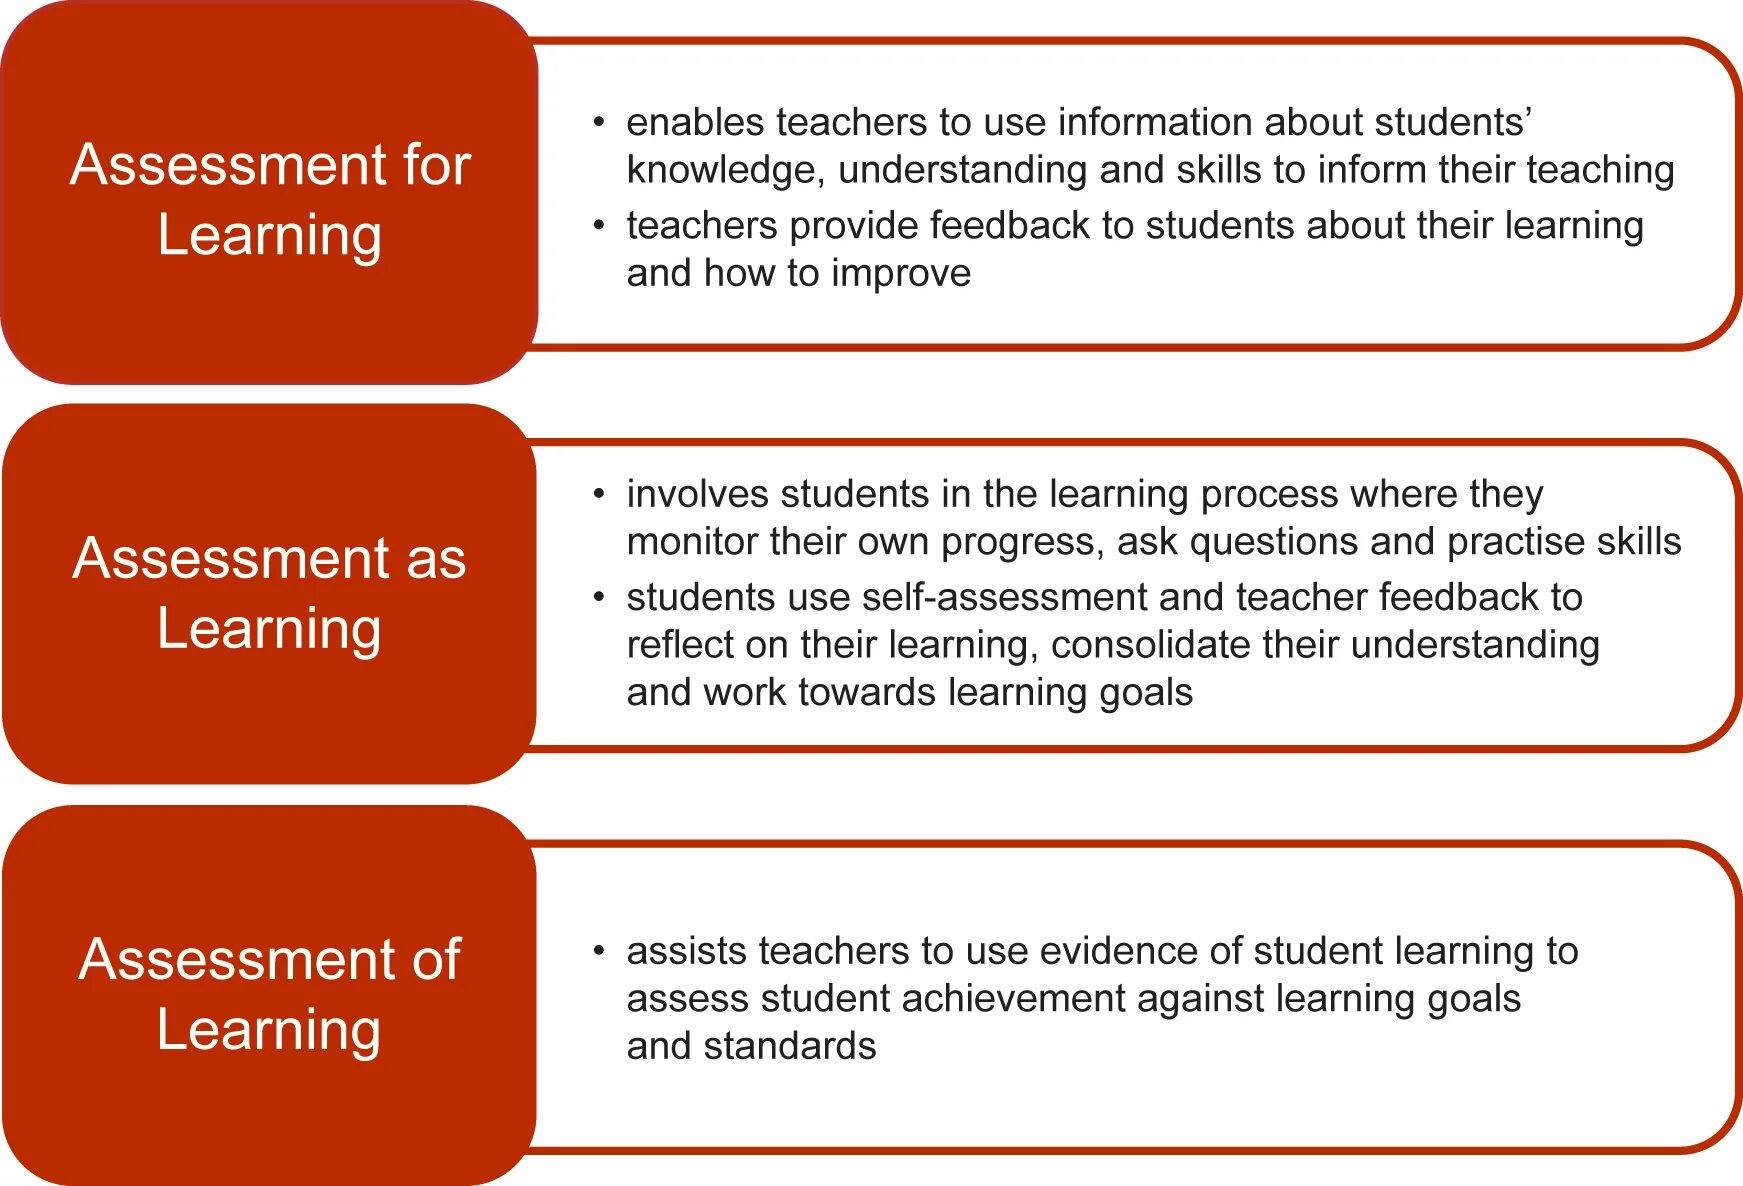 Assessment for Learning. Assessment of Learning and Assessment for Learning. Understanding Assessment for Learning. Assessment . Types of Assessment.